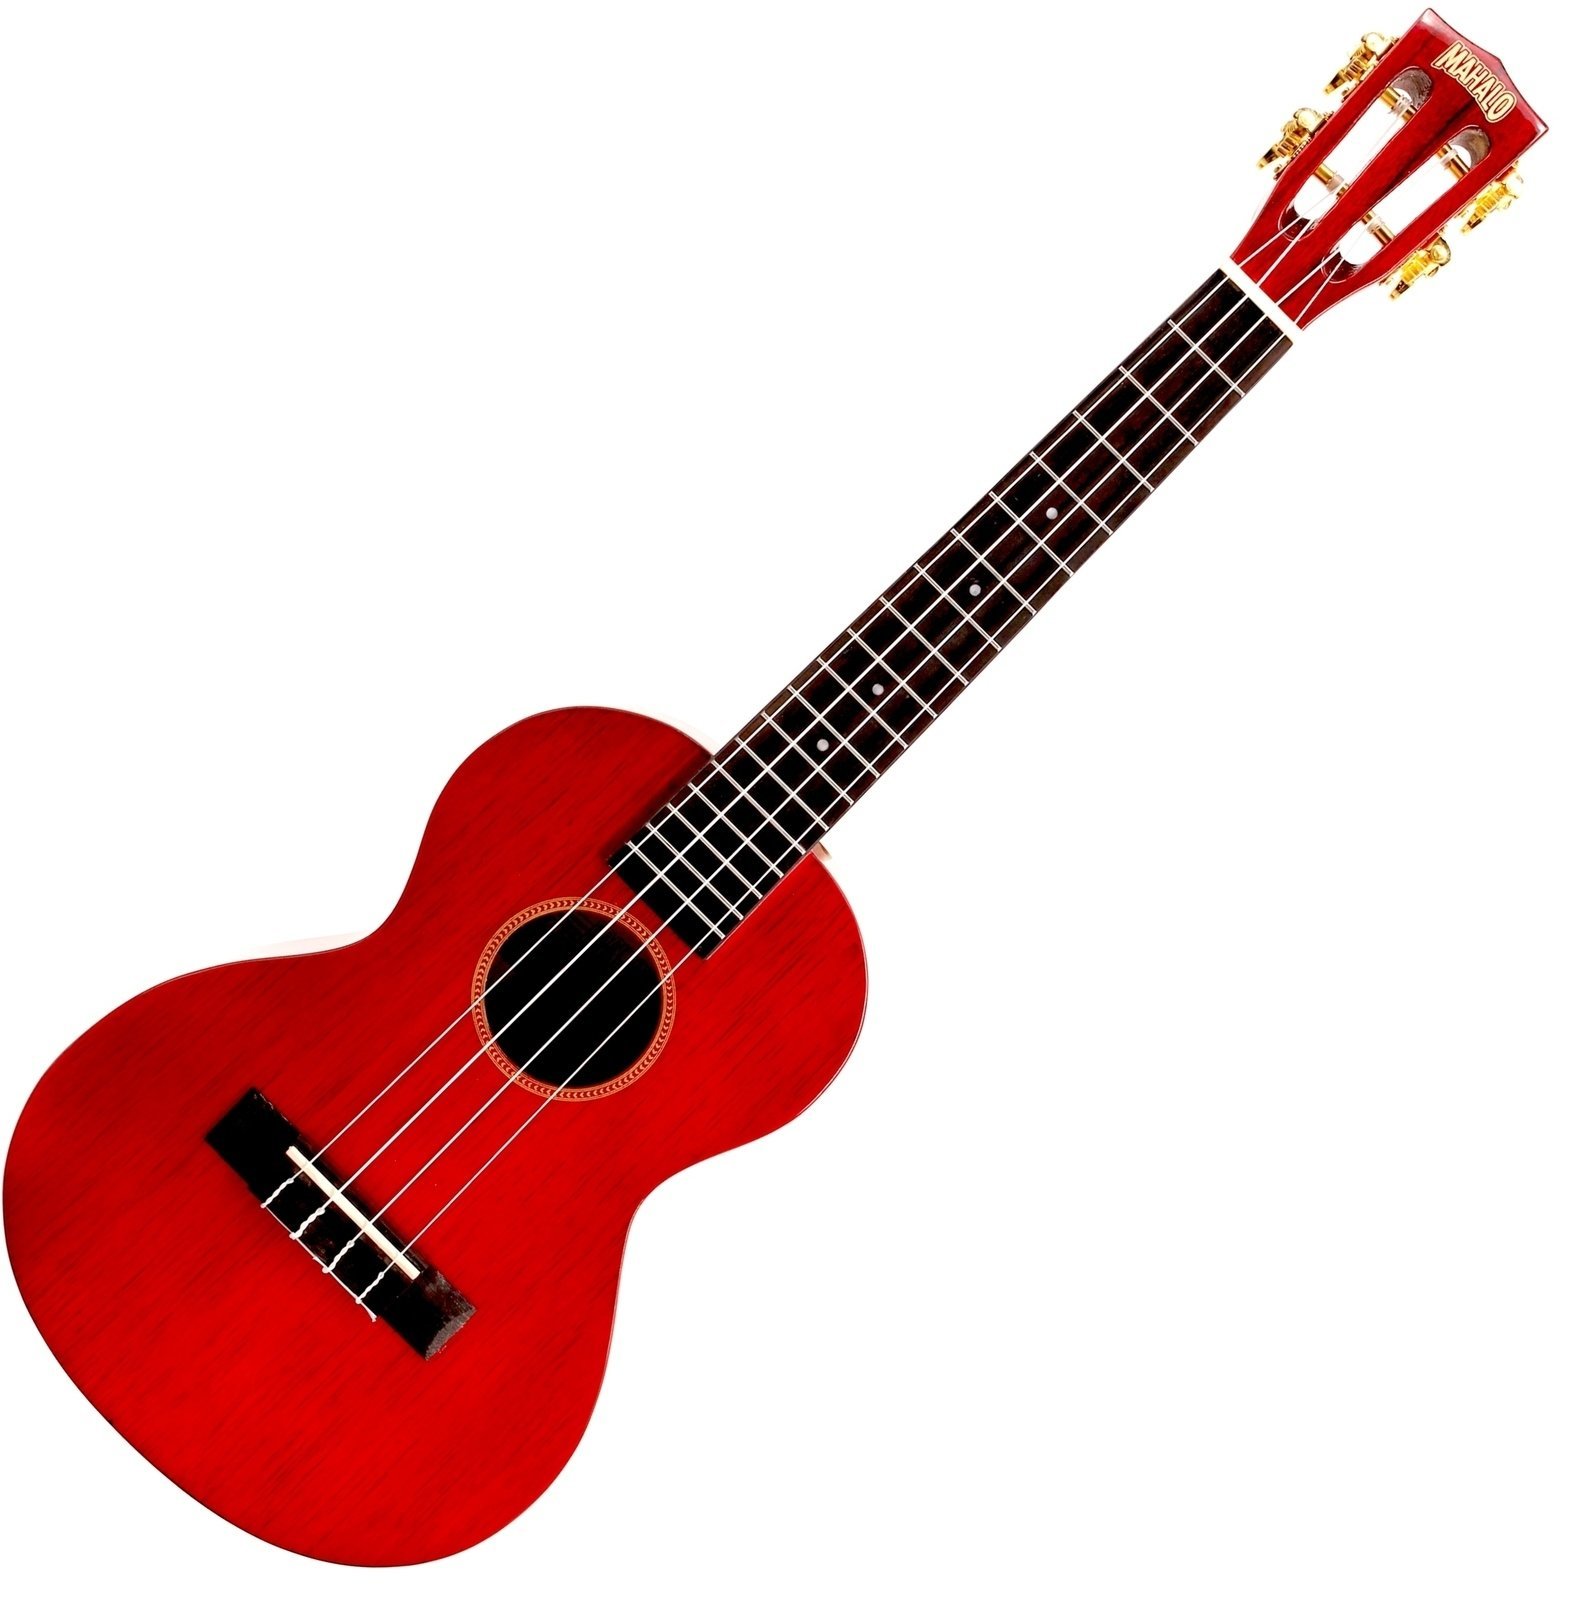 Tenor-ukuleler Mahalo Tenor Ukulele Trans Wine Red